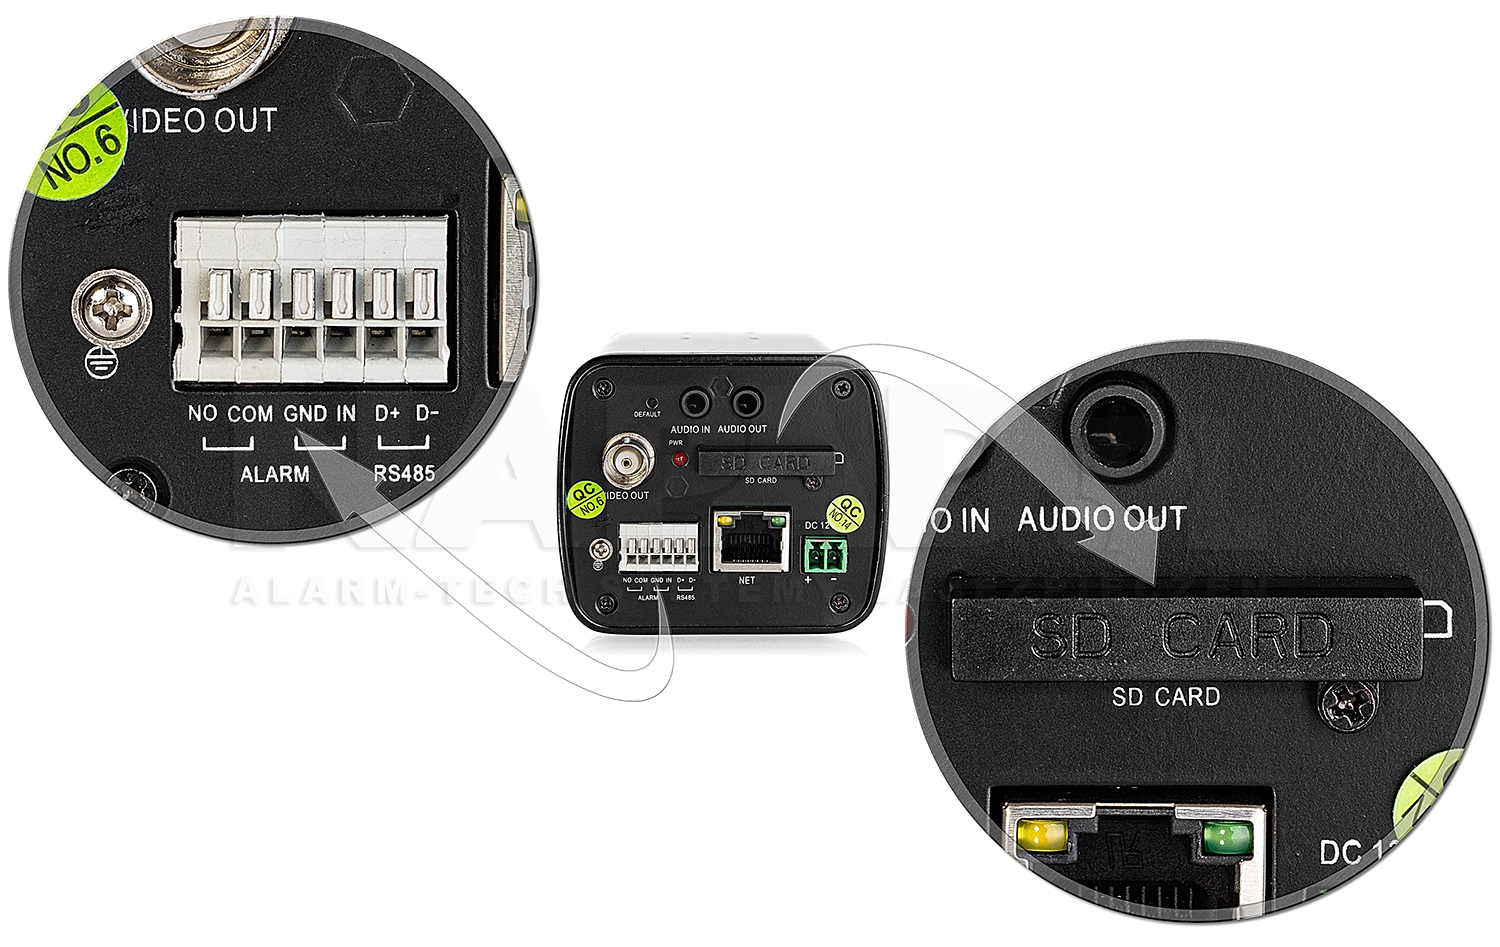 Wejścia alarmowe oraz slot karty pamięci SD w kamerze HD3000B.